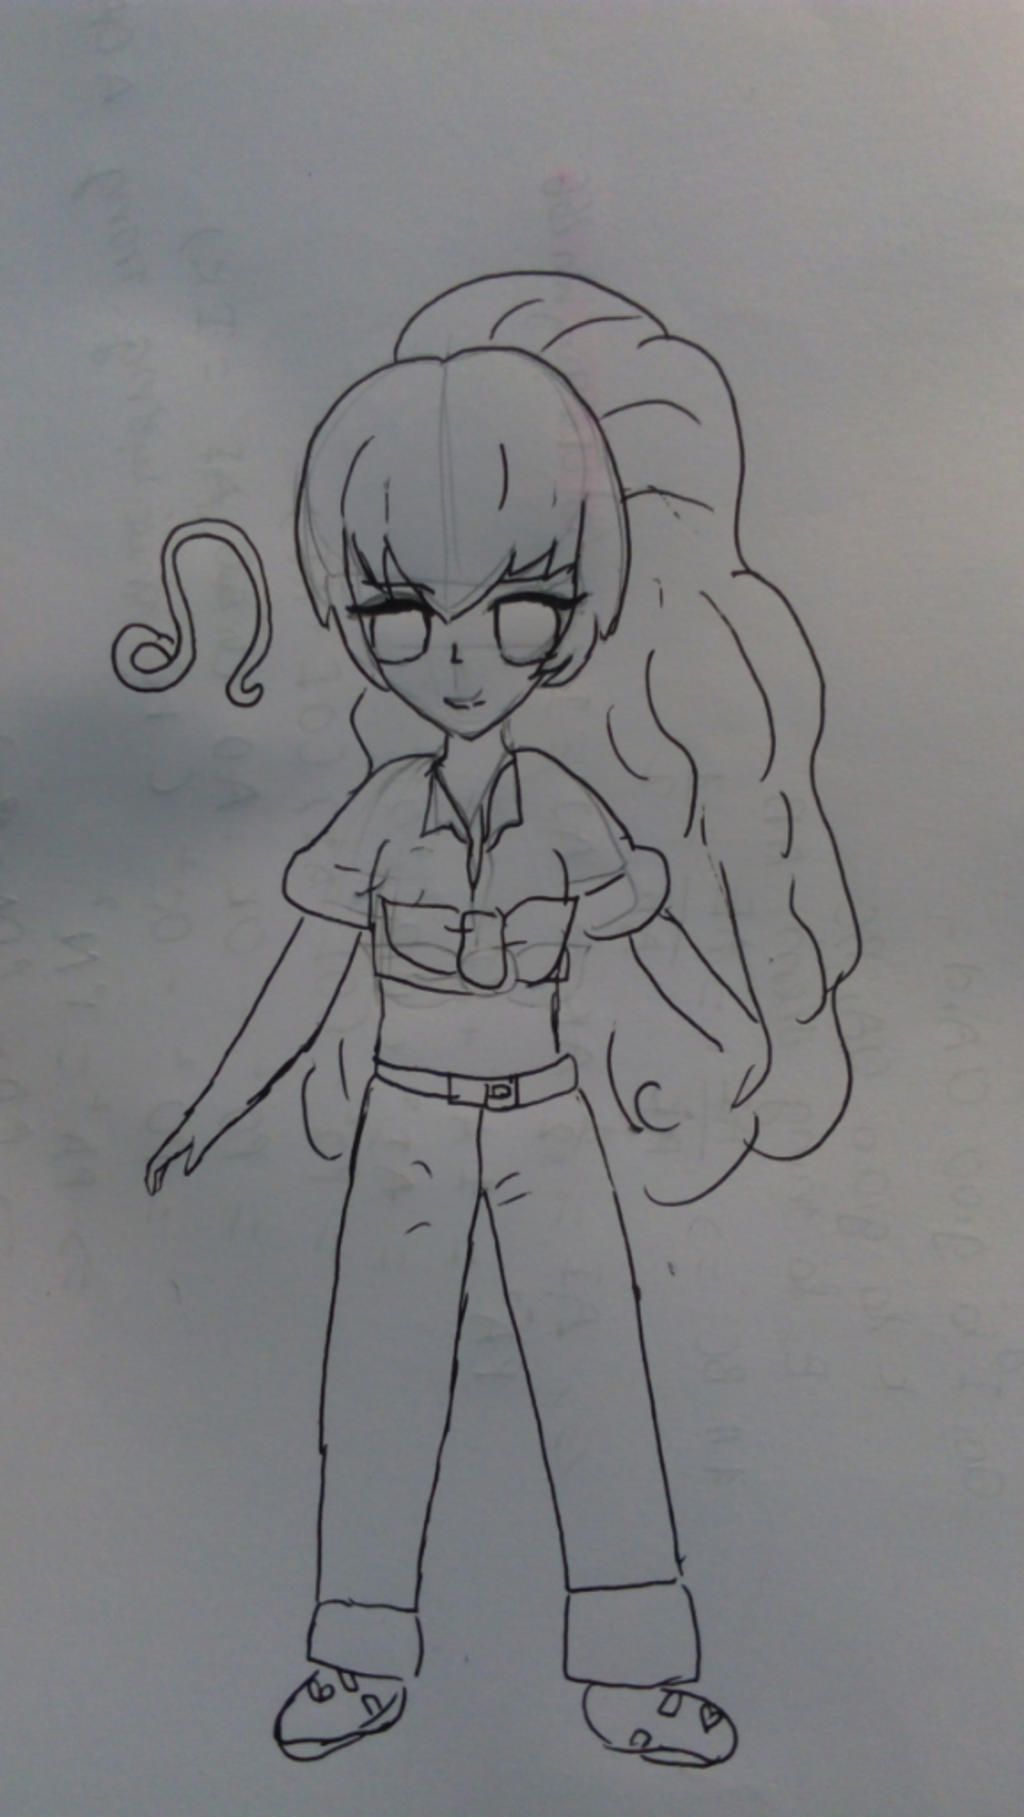 Vẽ Sư Tử nữ (hình dưới) ở trong truyện lớp học Mật Ngữ sang phiên bản Anime  nhem Không tô màu, không line, chỉ vẽ bằng bút chì Có chữ kí Ai